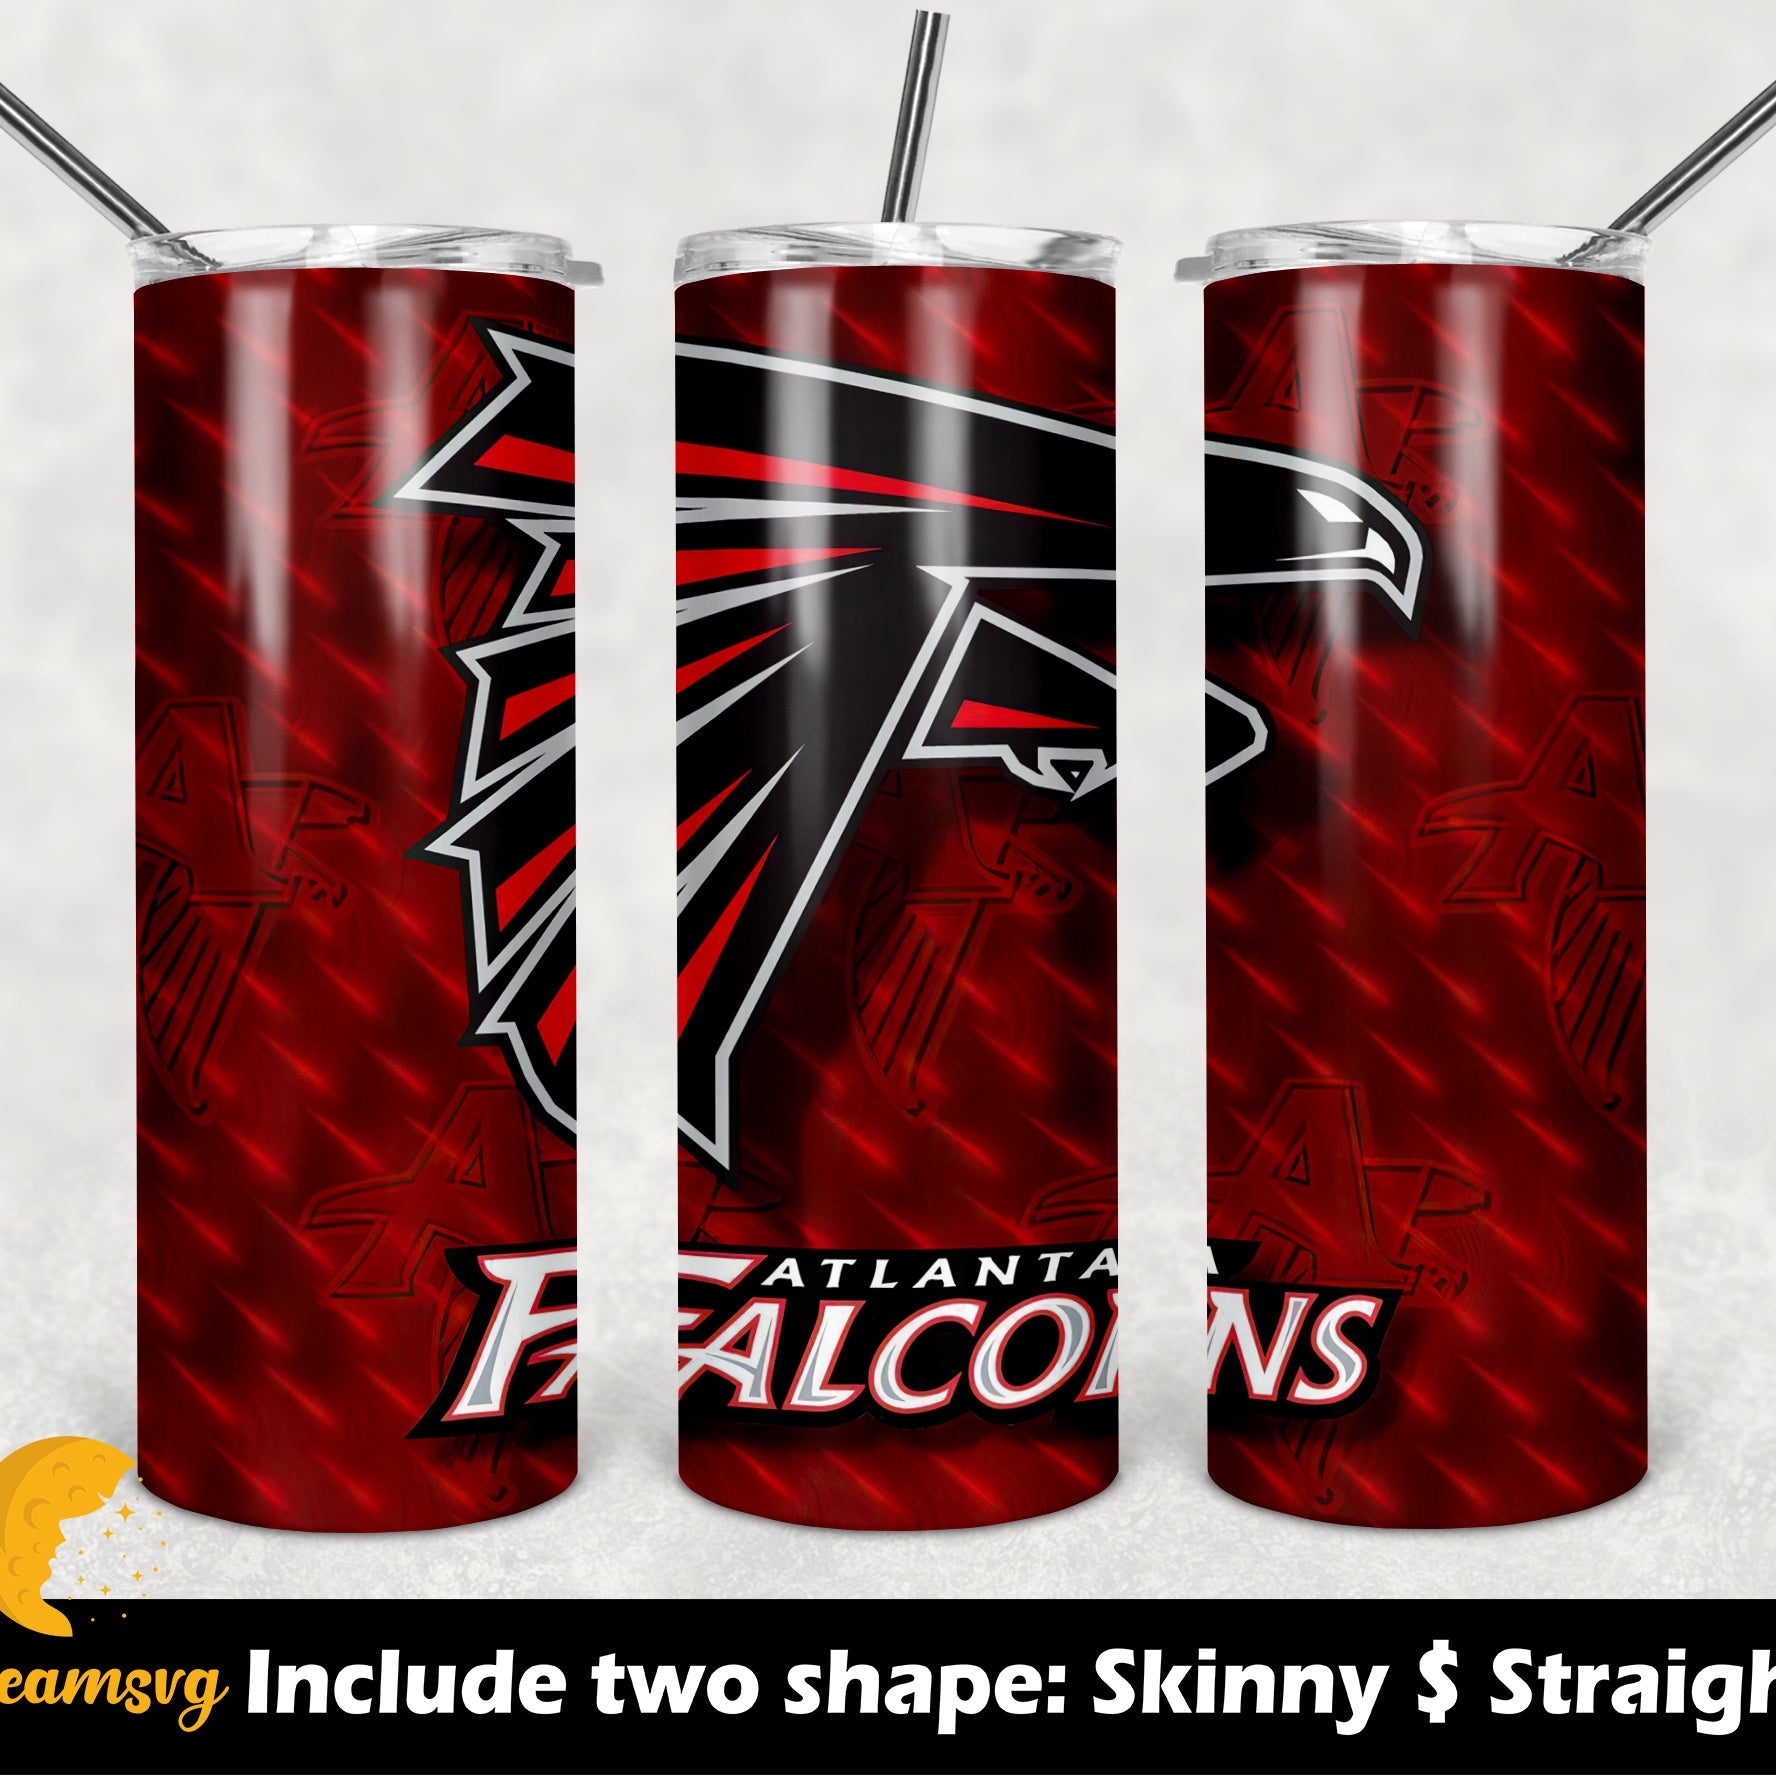 20 oz Skinny Tumbler NFL png,  Tumbler Wrap Sublimation Waterslide JPG Design Sublimation PNG Graphics Designs Instant Download